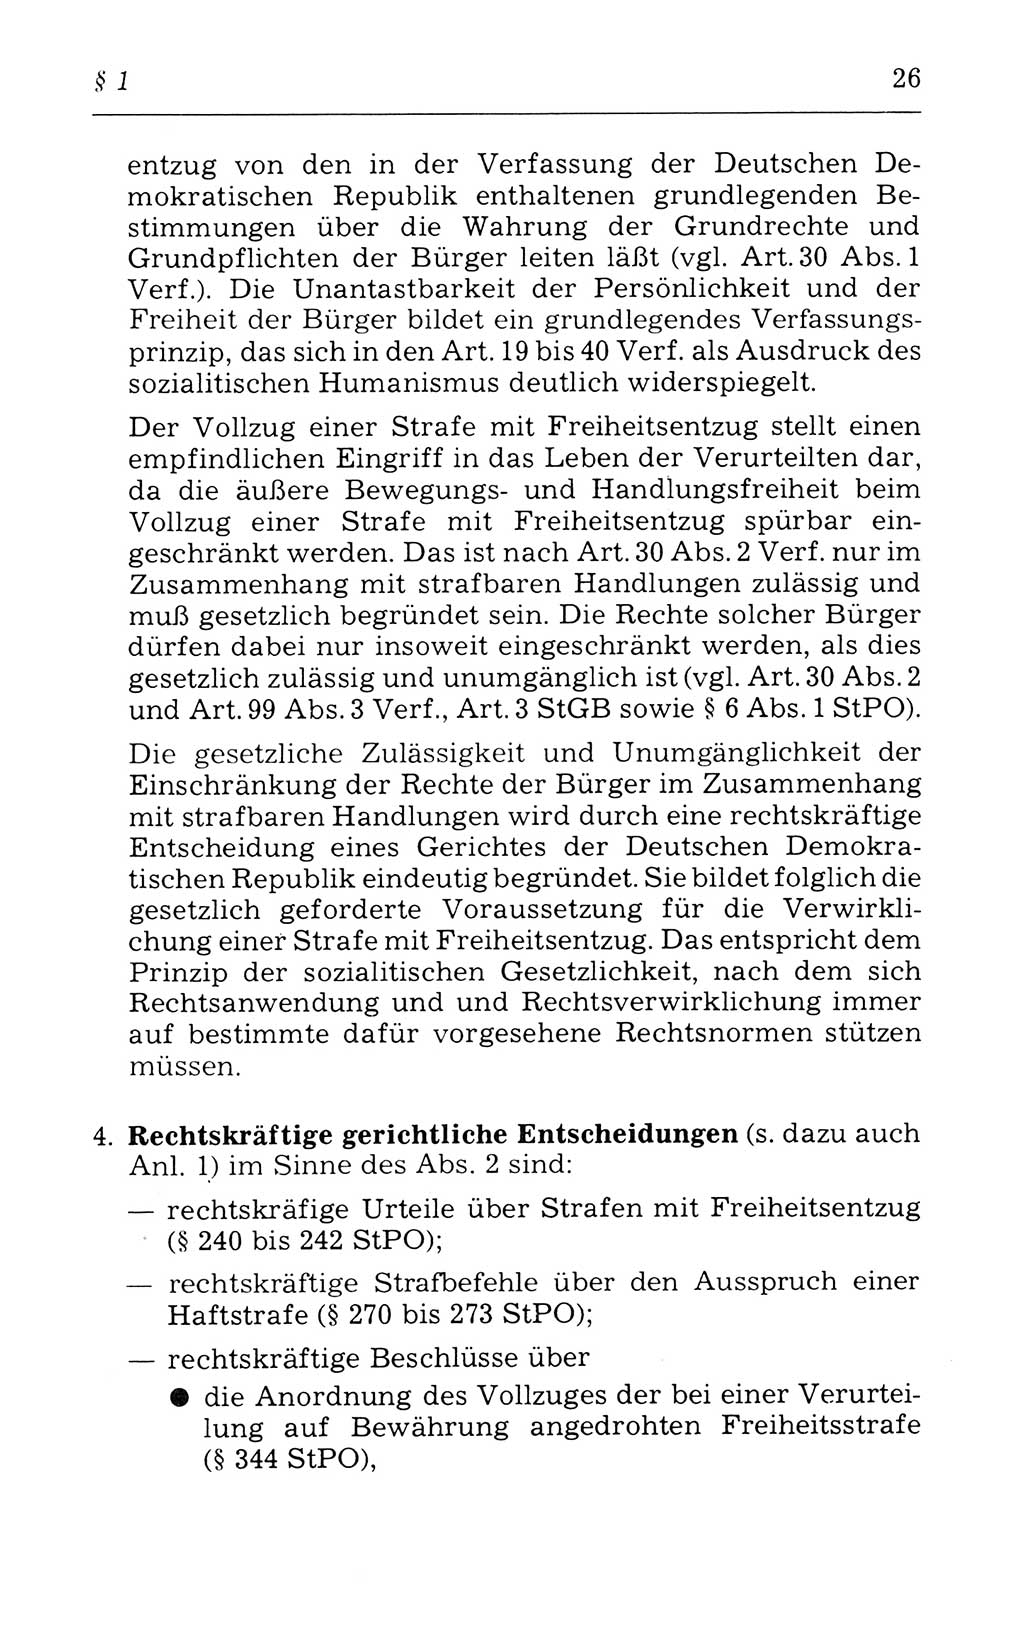 Kommentar zum Strafvollzugsgesetz [(StVG) Deutsche Demokratische Republik (DDR)] 1980, Seite 26 (Komm. StVG DDR 1980, S. 26)